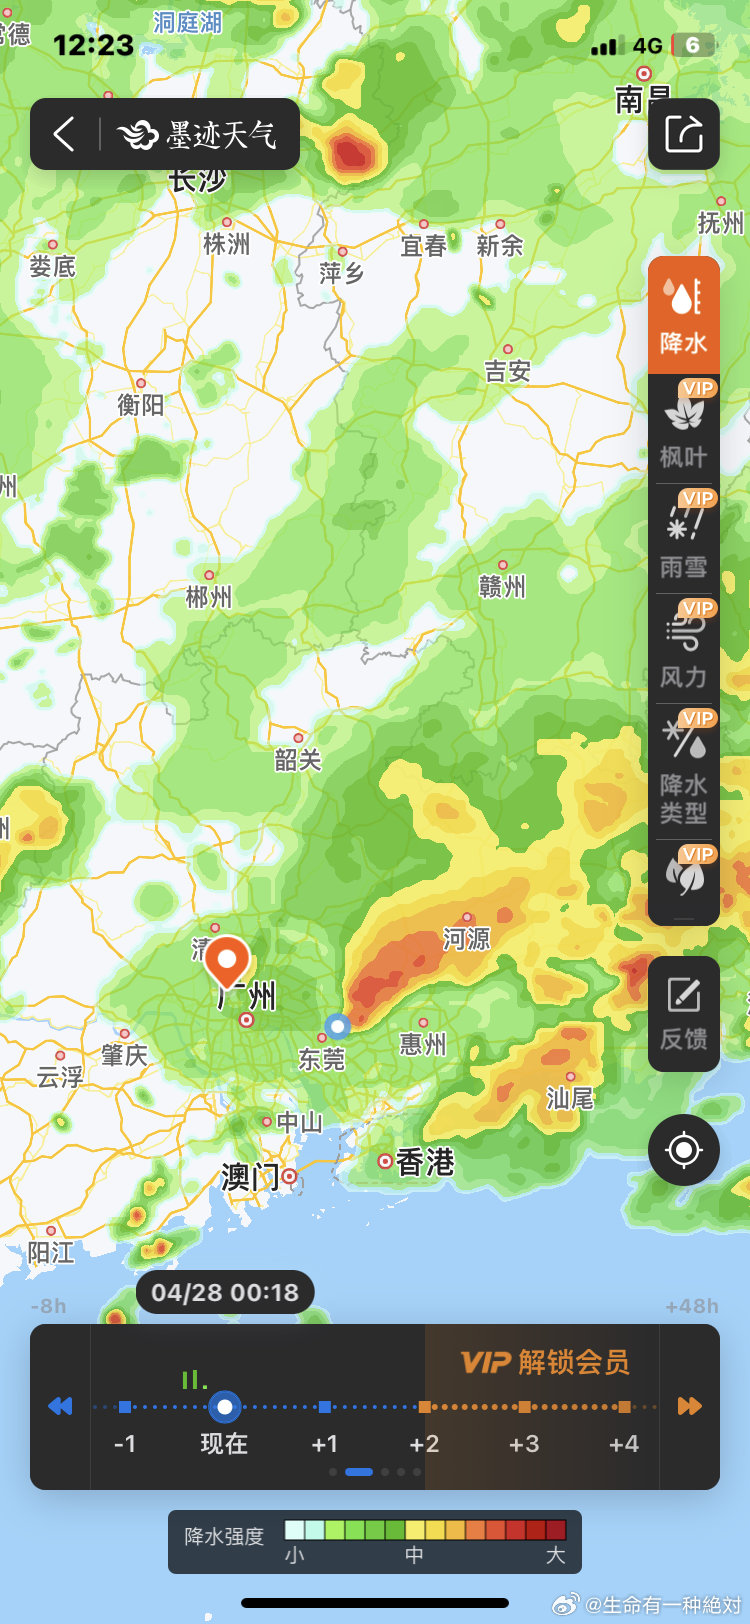 湖南、广东多地暴雨，影响京广、京九多班列车延迟或停驶。